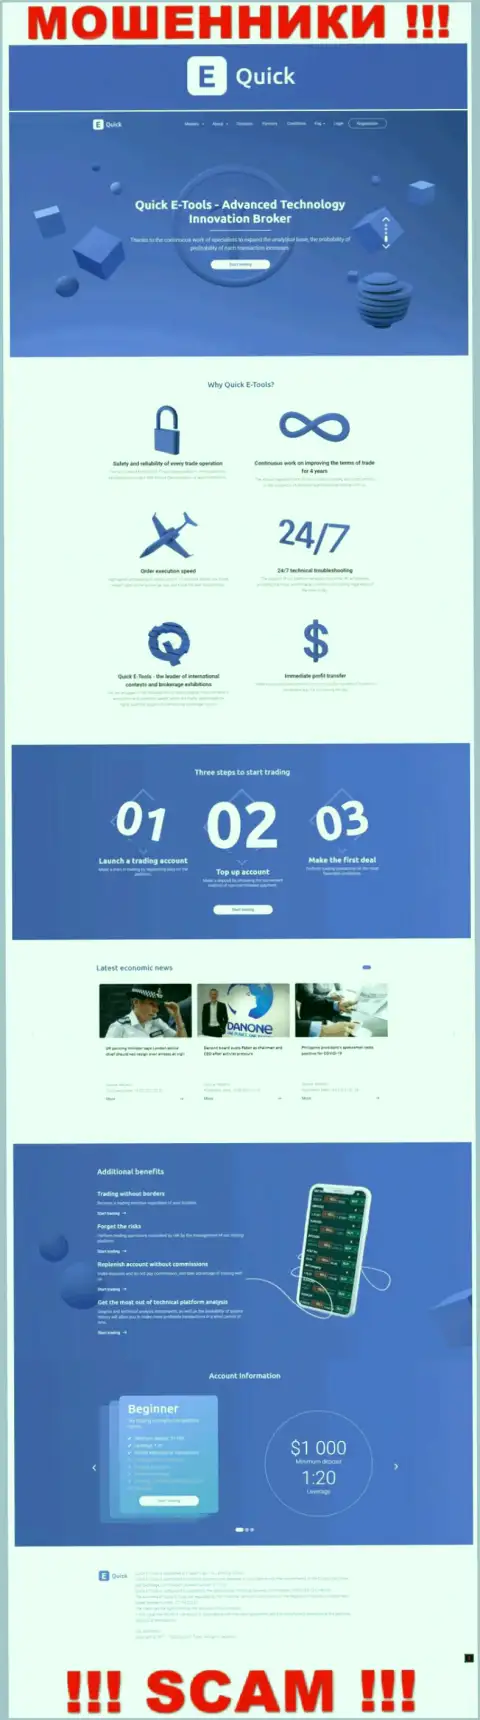 QuickETools Com - сайт организации Quick E-Tools Ltd, обычная страница мошенников